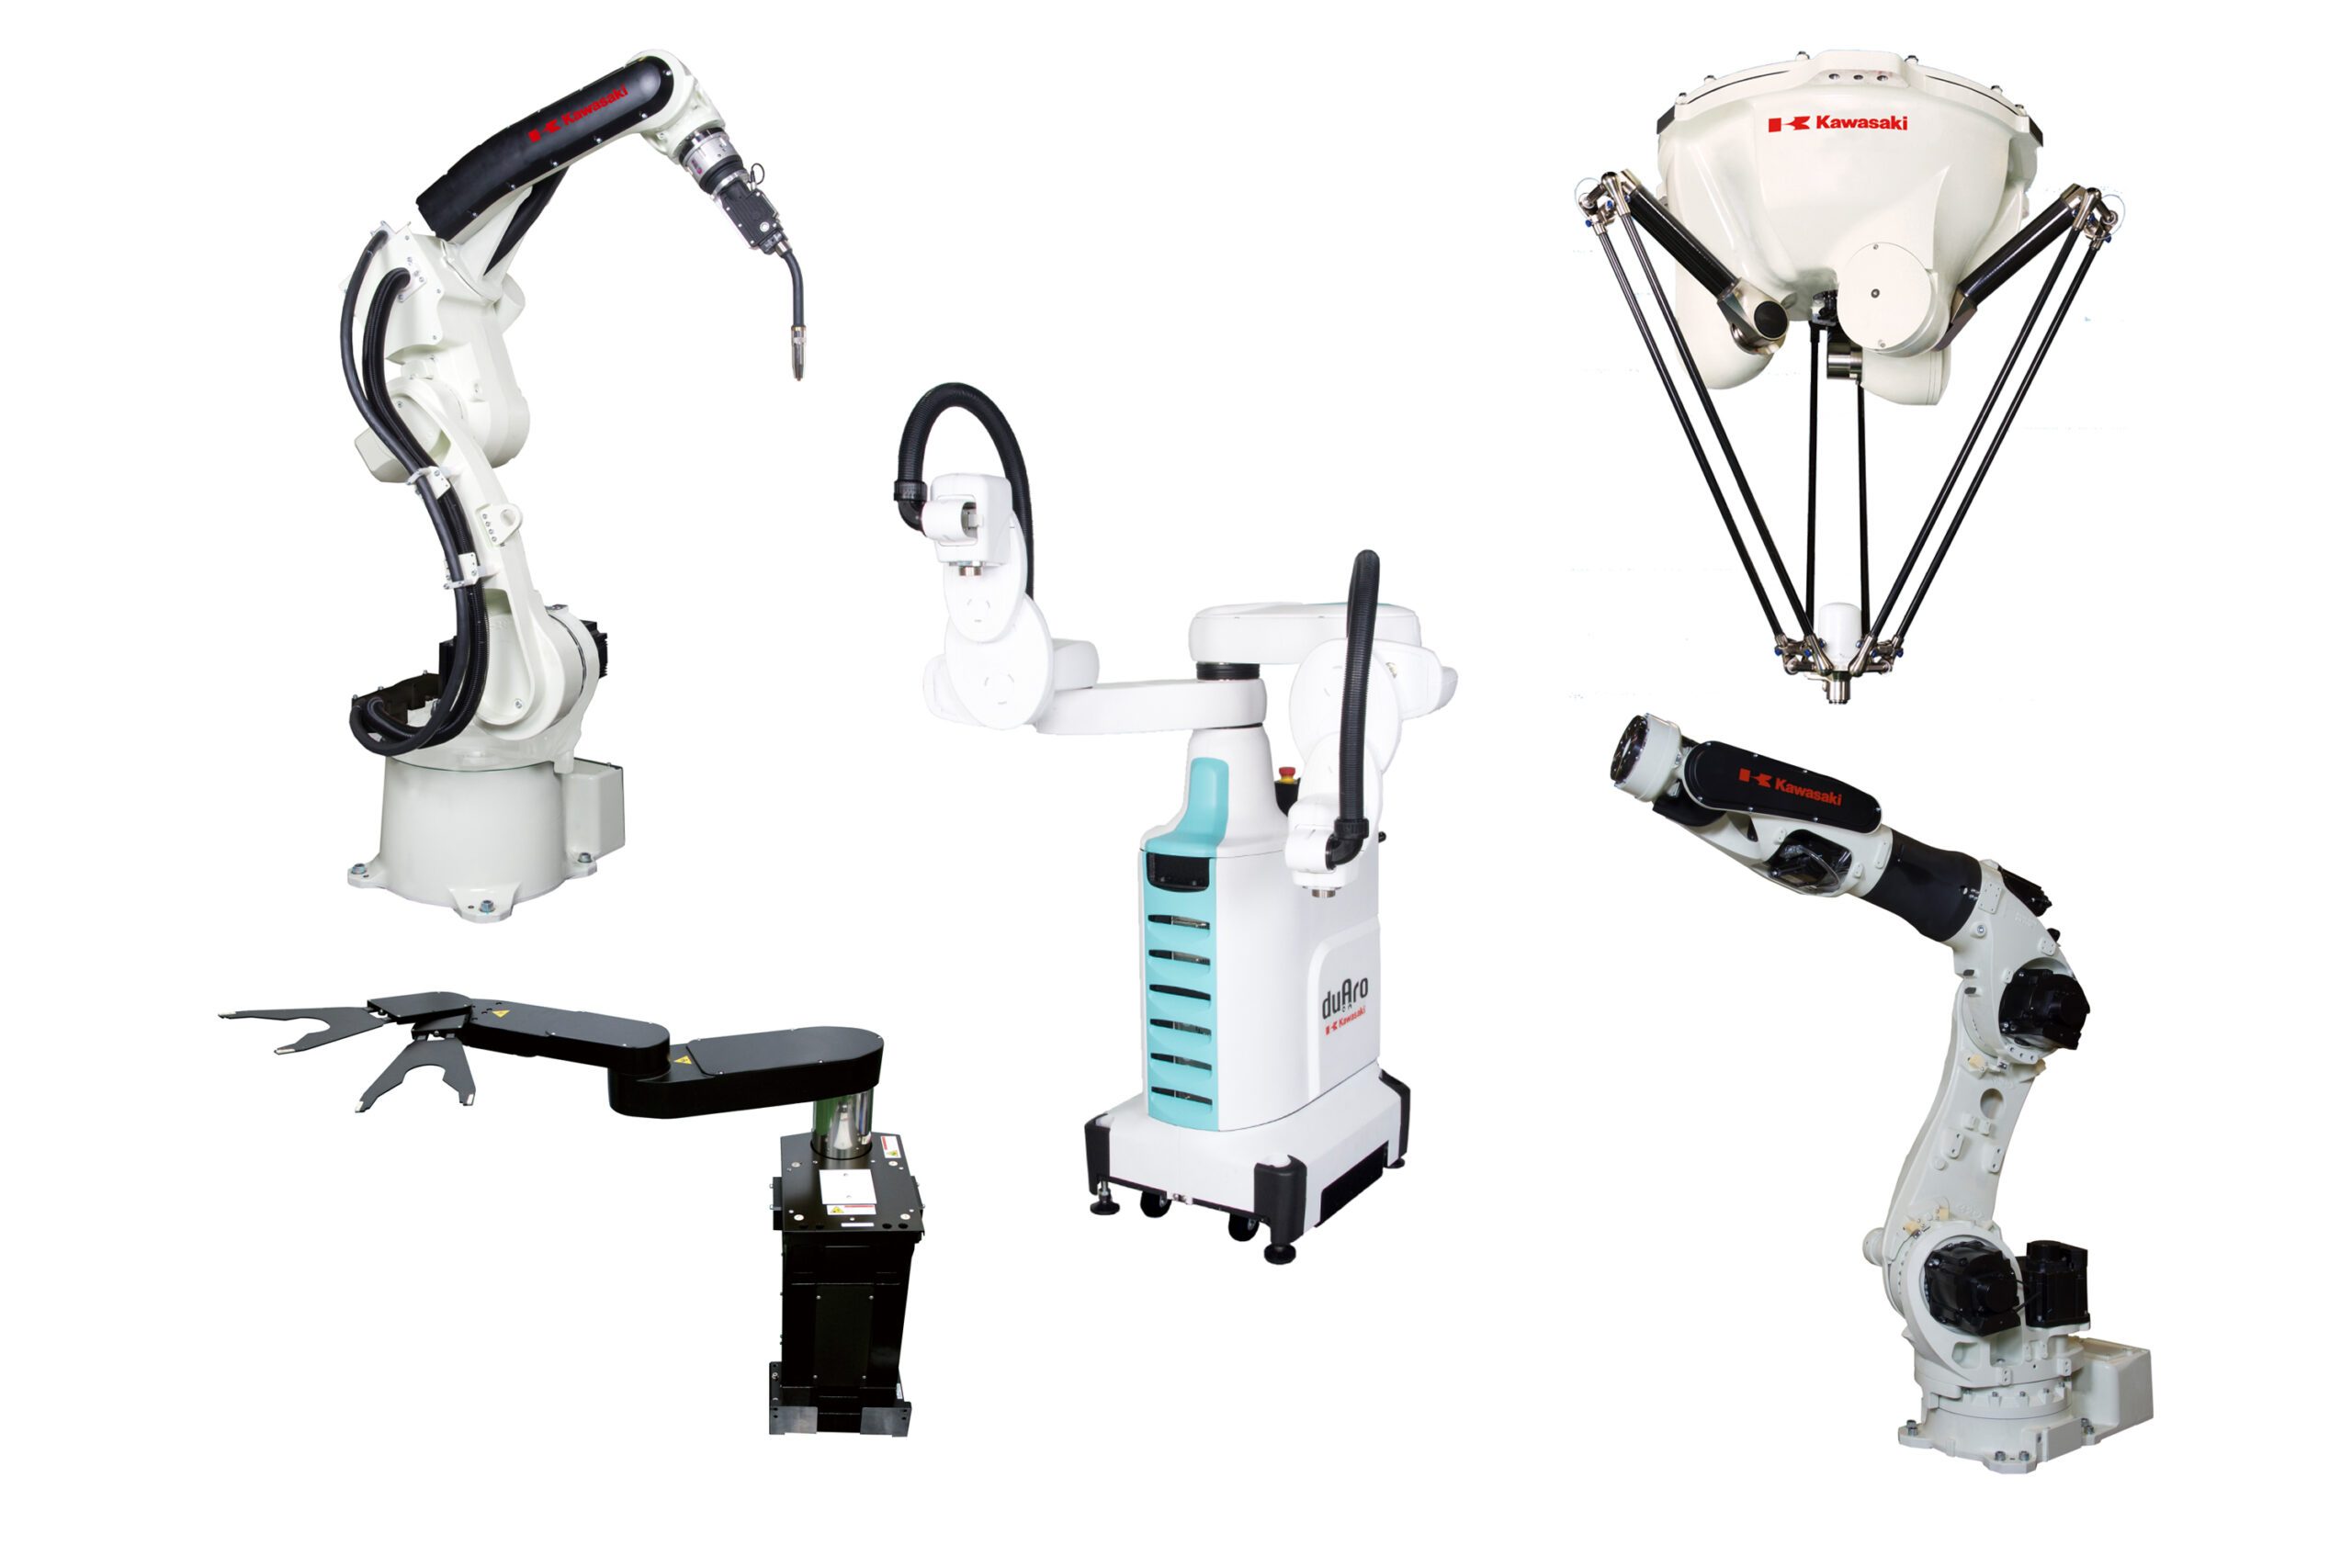 産業用ロボットの基礎知識 | 川崎重工の産業用ロボット